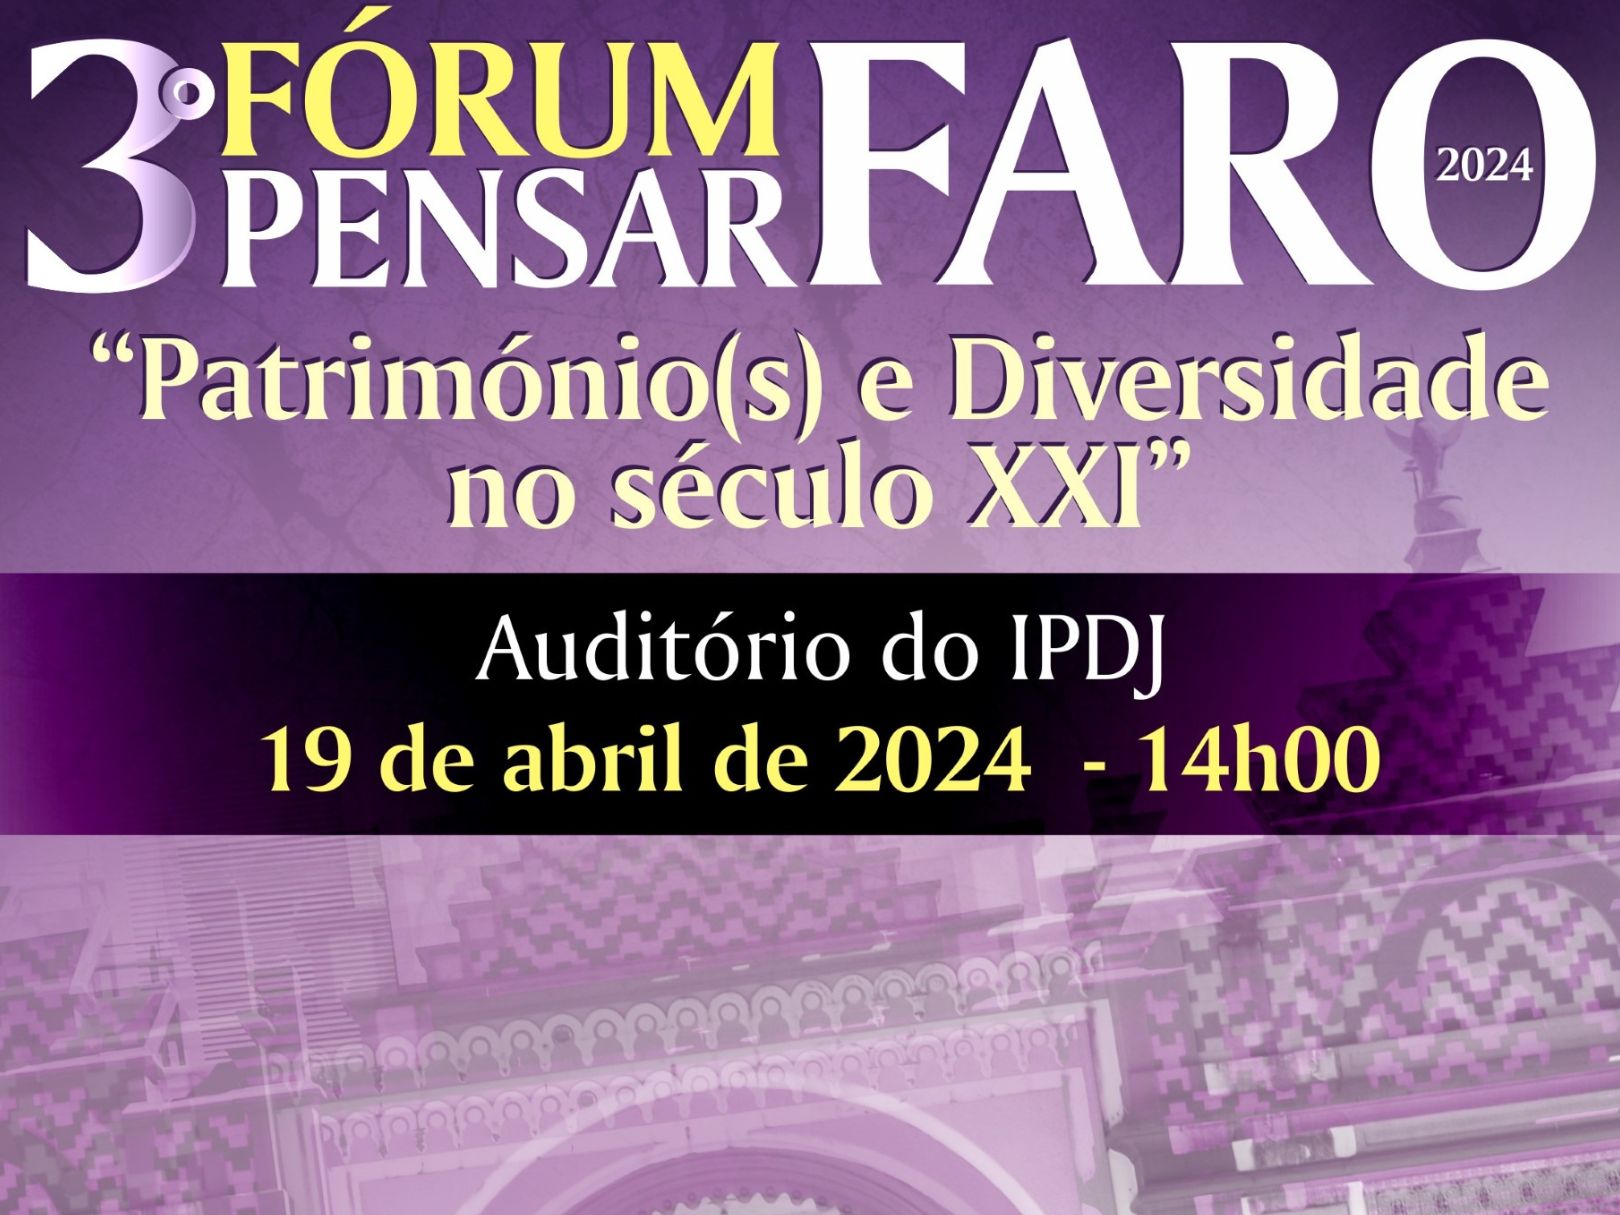 Próxima edição do Forum Pensar Faro conta com a coordenação de Jorge Carrega